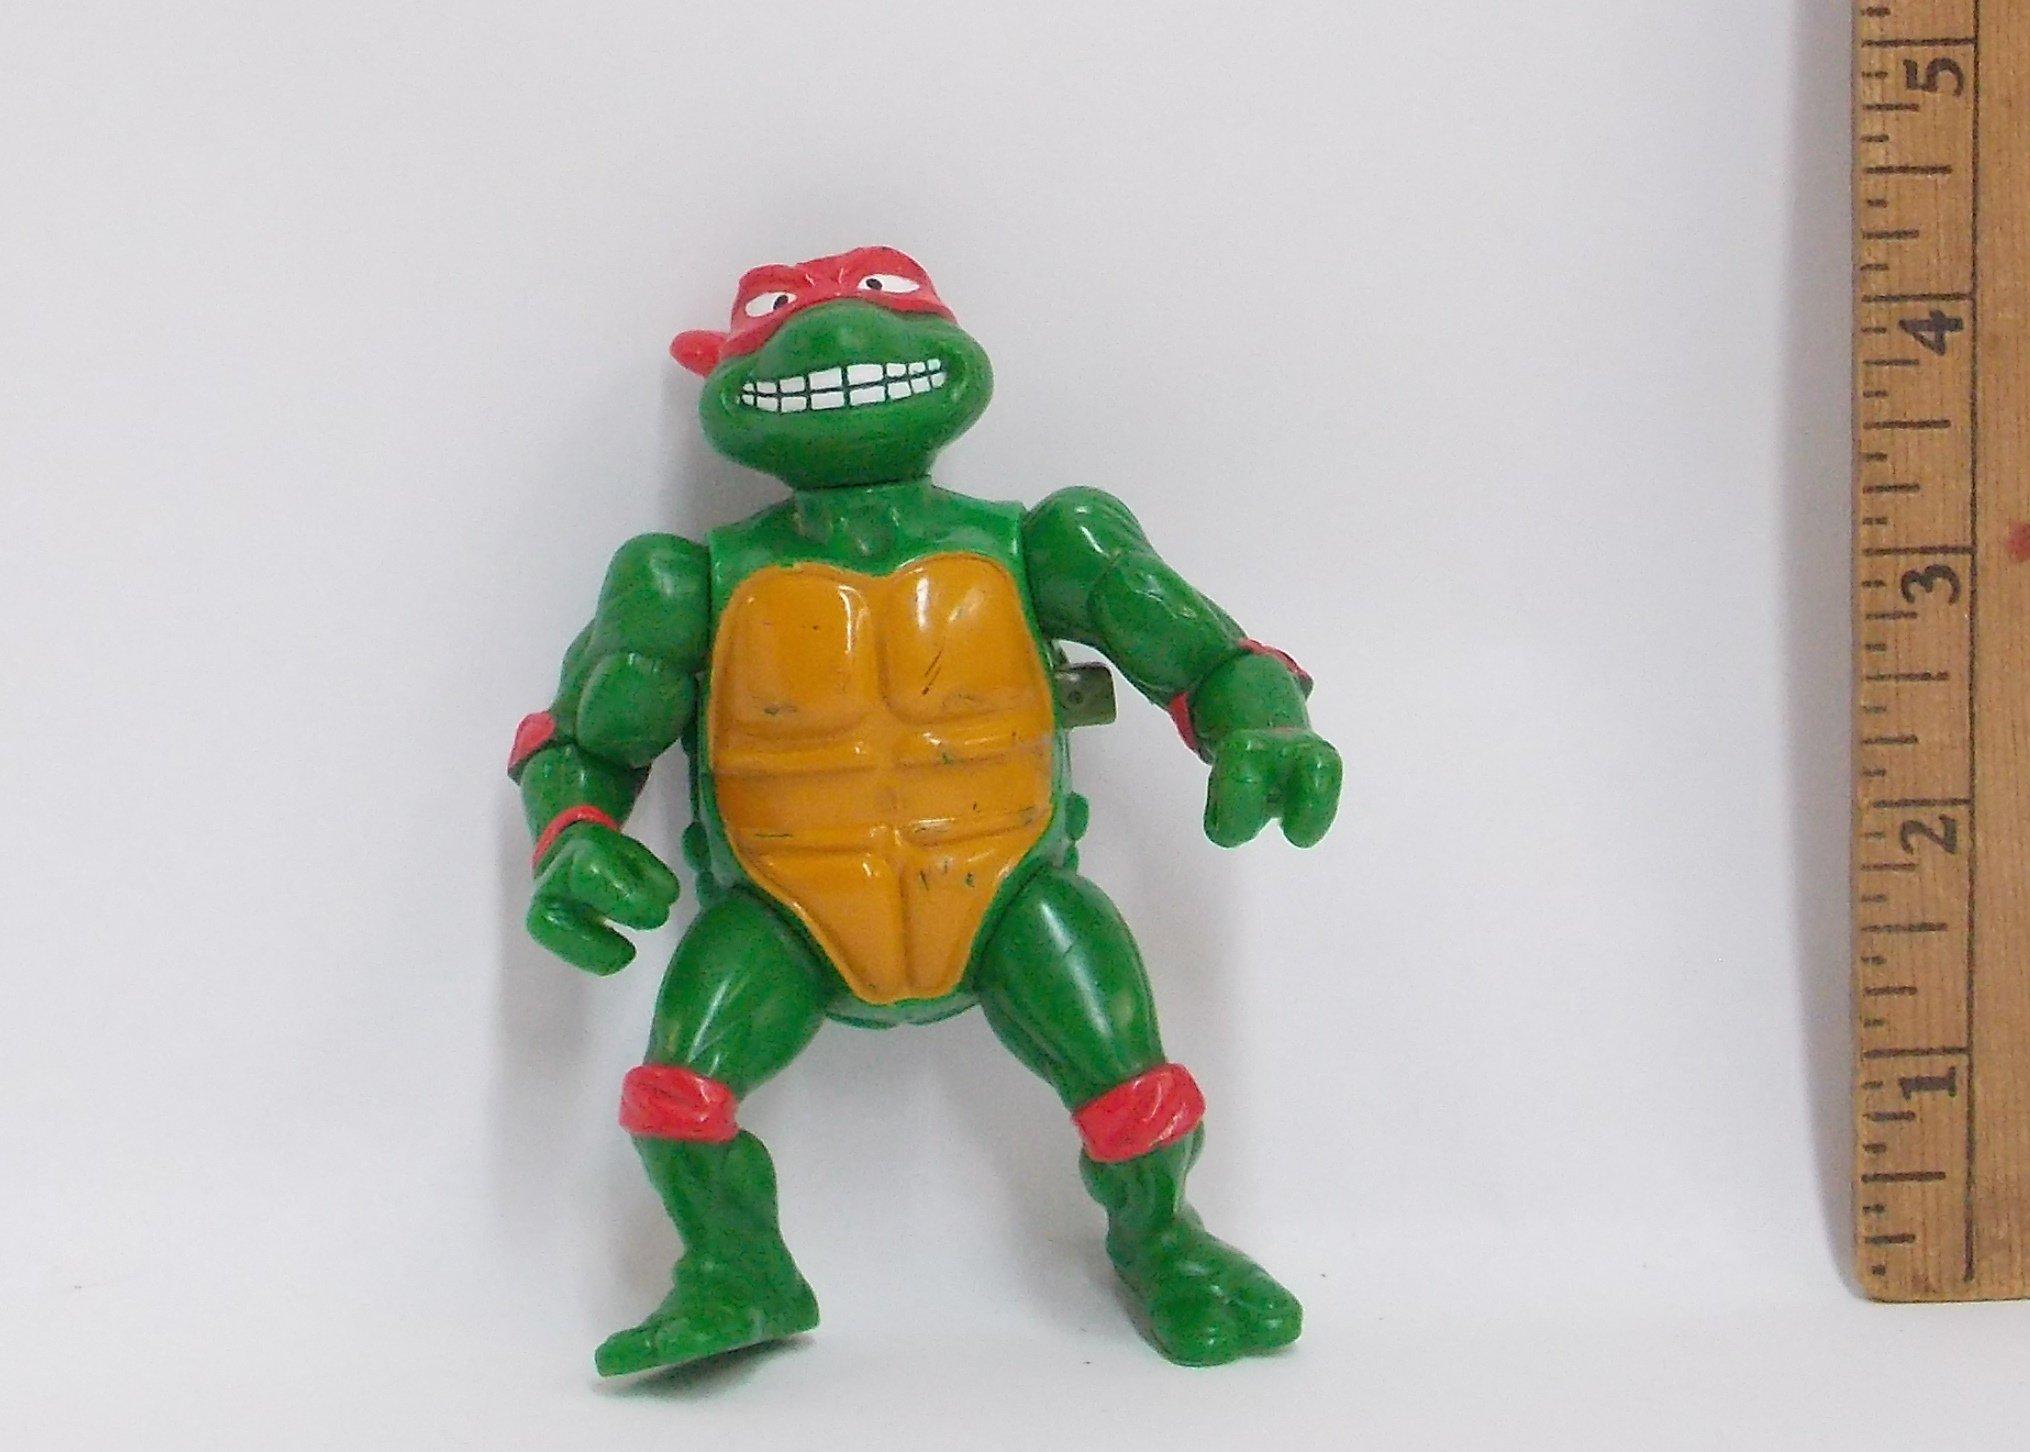 Breakfightin Raphael Vintage Teenage Mutant Ninja Turtles Action Figure